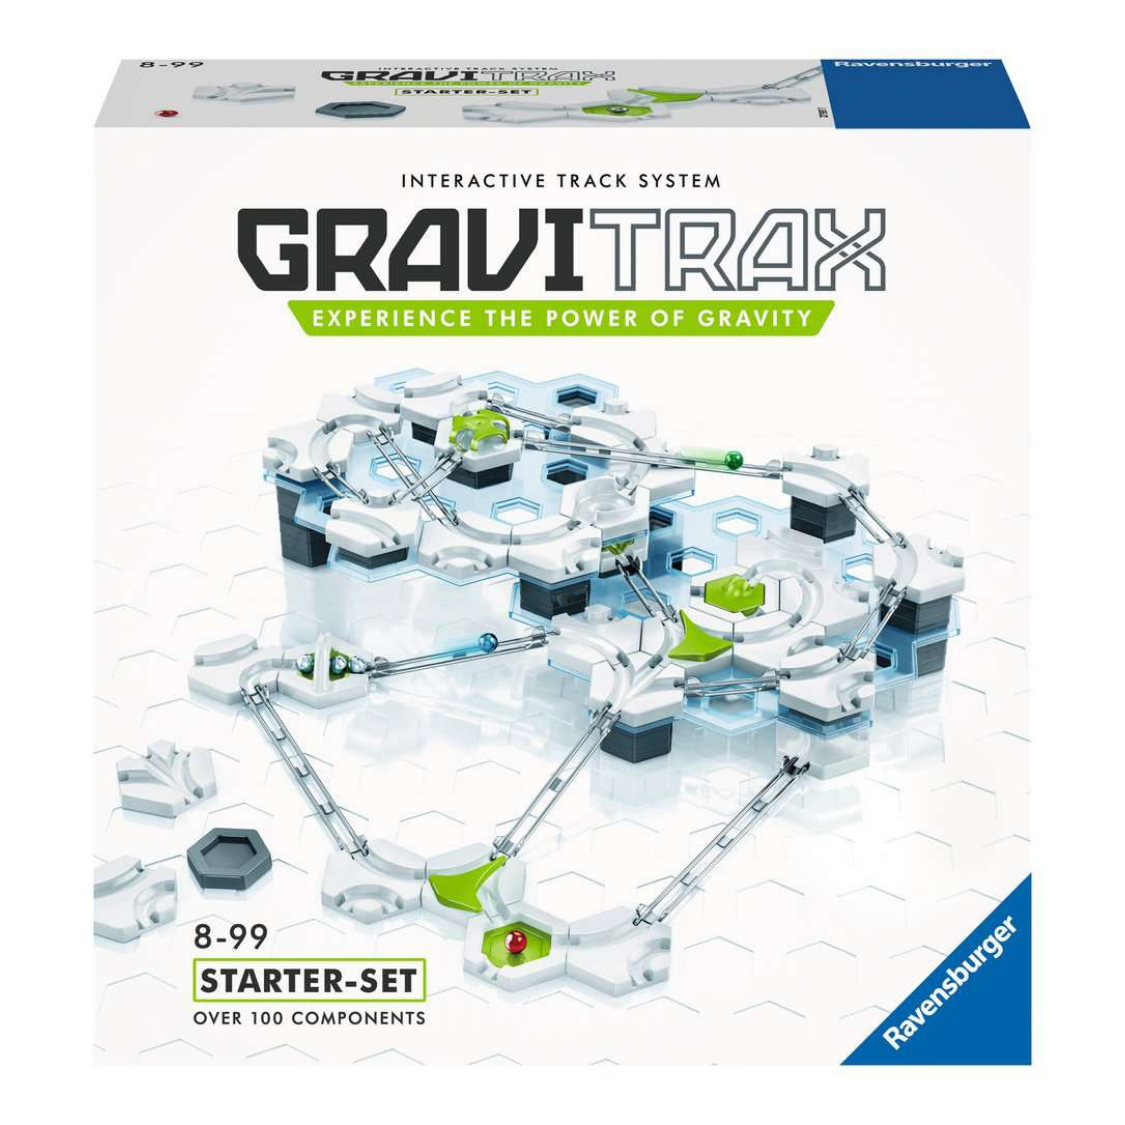 GraviTrax: Starter Set